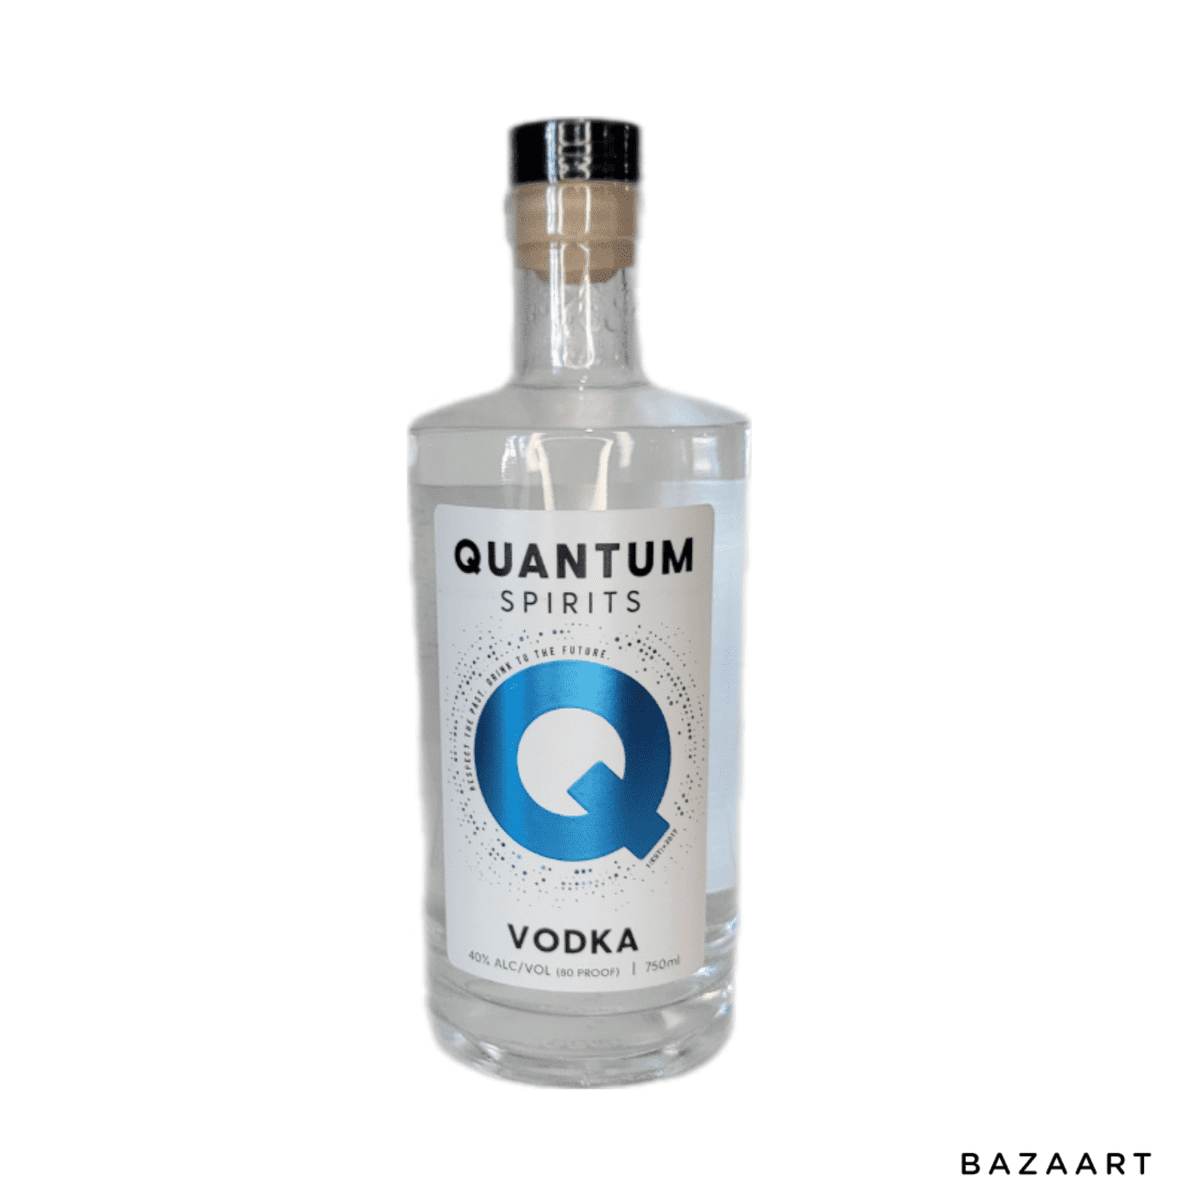 Quantum Spirits - Vodka - 750mL Bottle